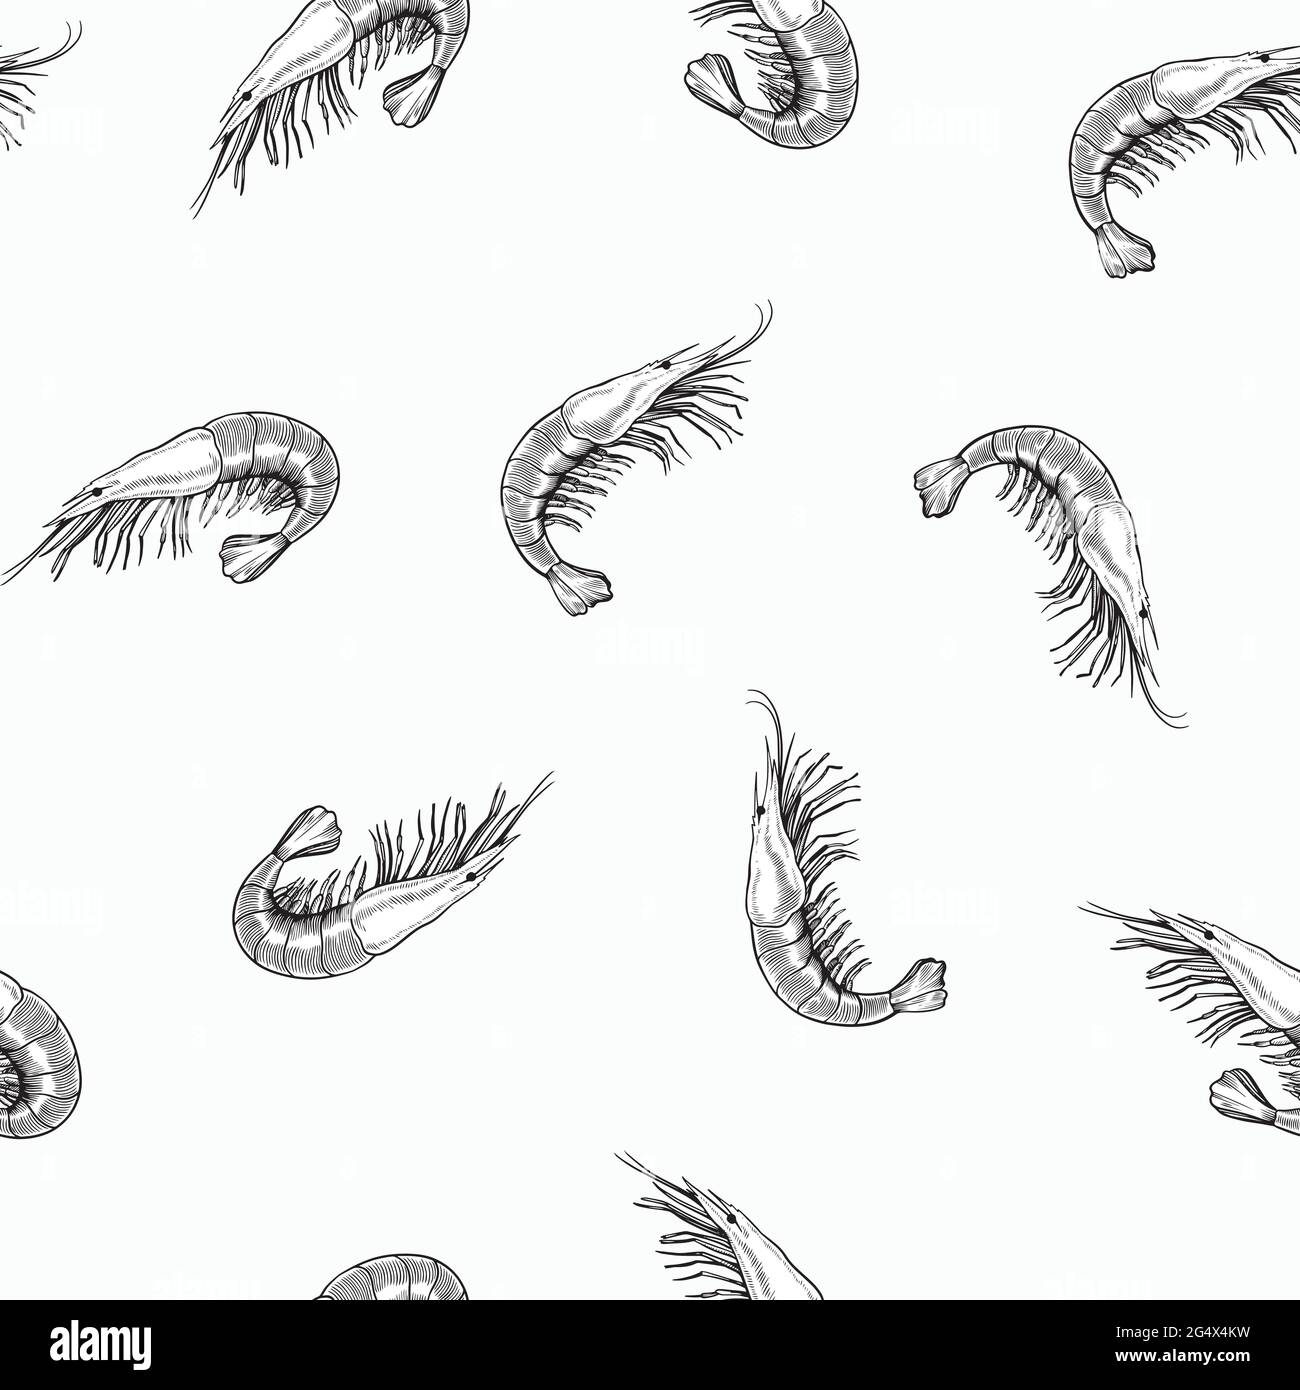 Nahtloses Muster mit Meernahrung, Garnelen, gezeichnet im Vintage-Gravurstil. Handzeichnung, schwarz-weiß Illustration. Stock Vektor